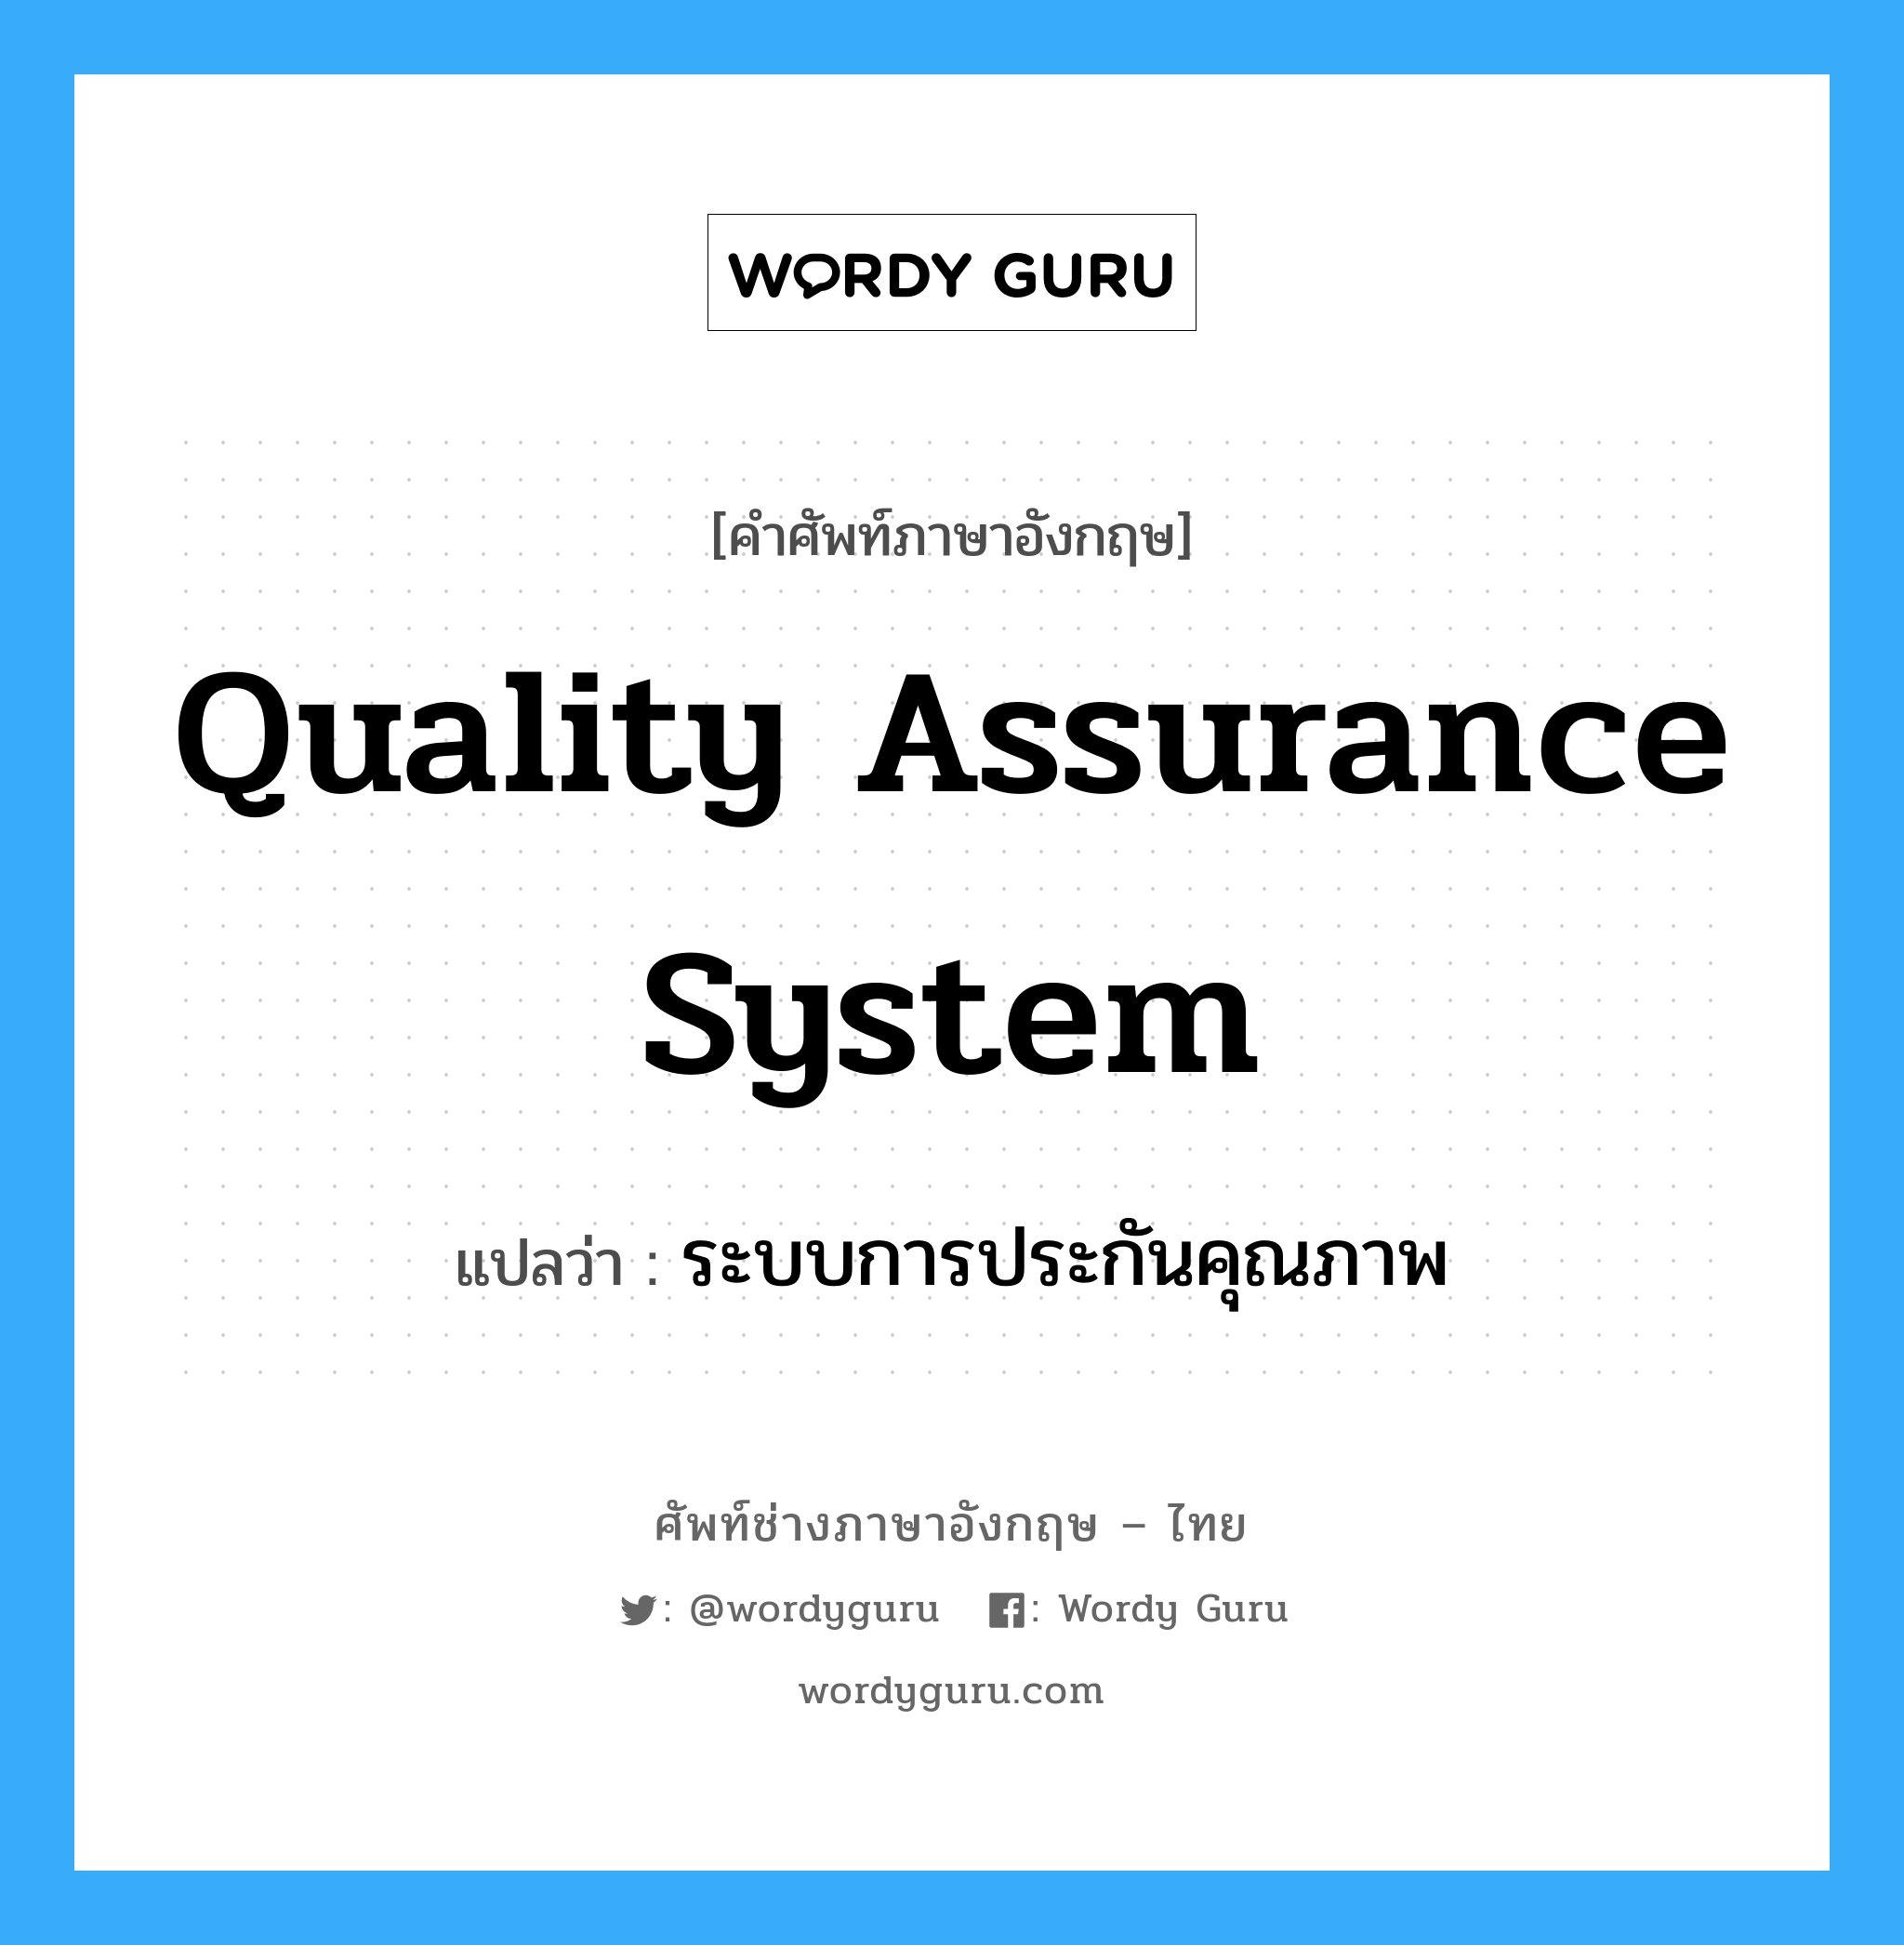 ระบบการประกันคุณภาพ ภาษาอังกฤษ?, คำศัพท์ช่างภาษาอังกฤษ - ไทย ระบบการประกันคุณภาพ คำศัพท์ภาษาอังกฤษ ระบบการประกันคุณภาพ แปลว่า Quality Assurance system